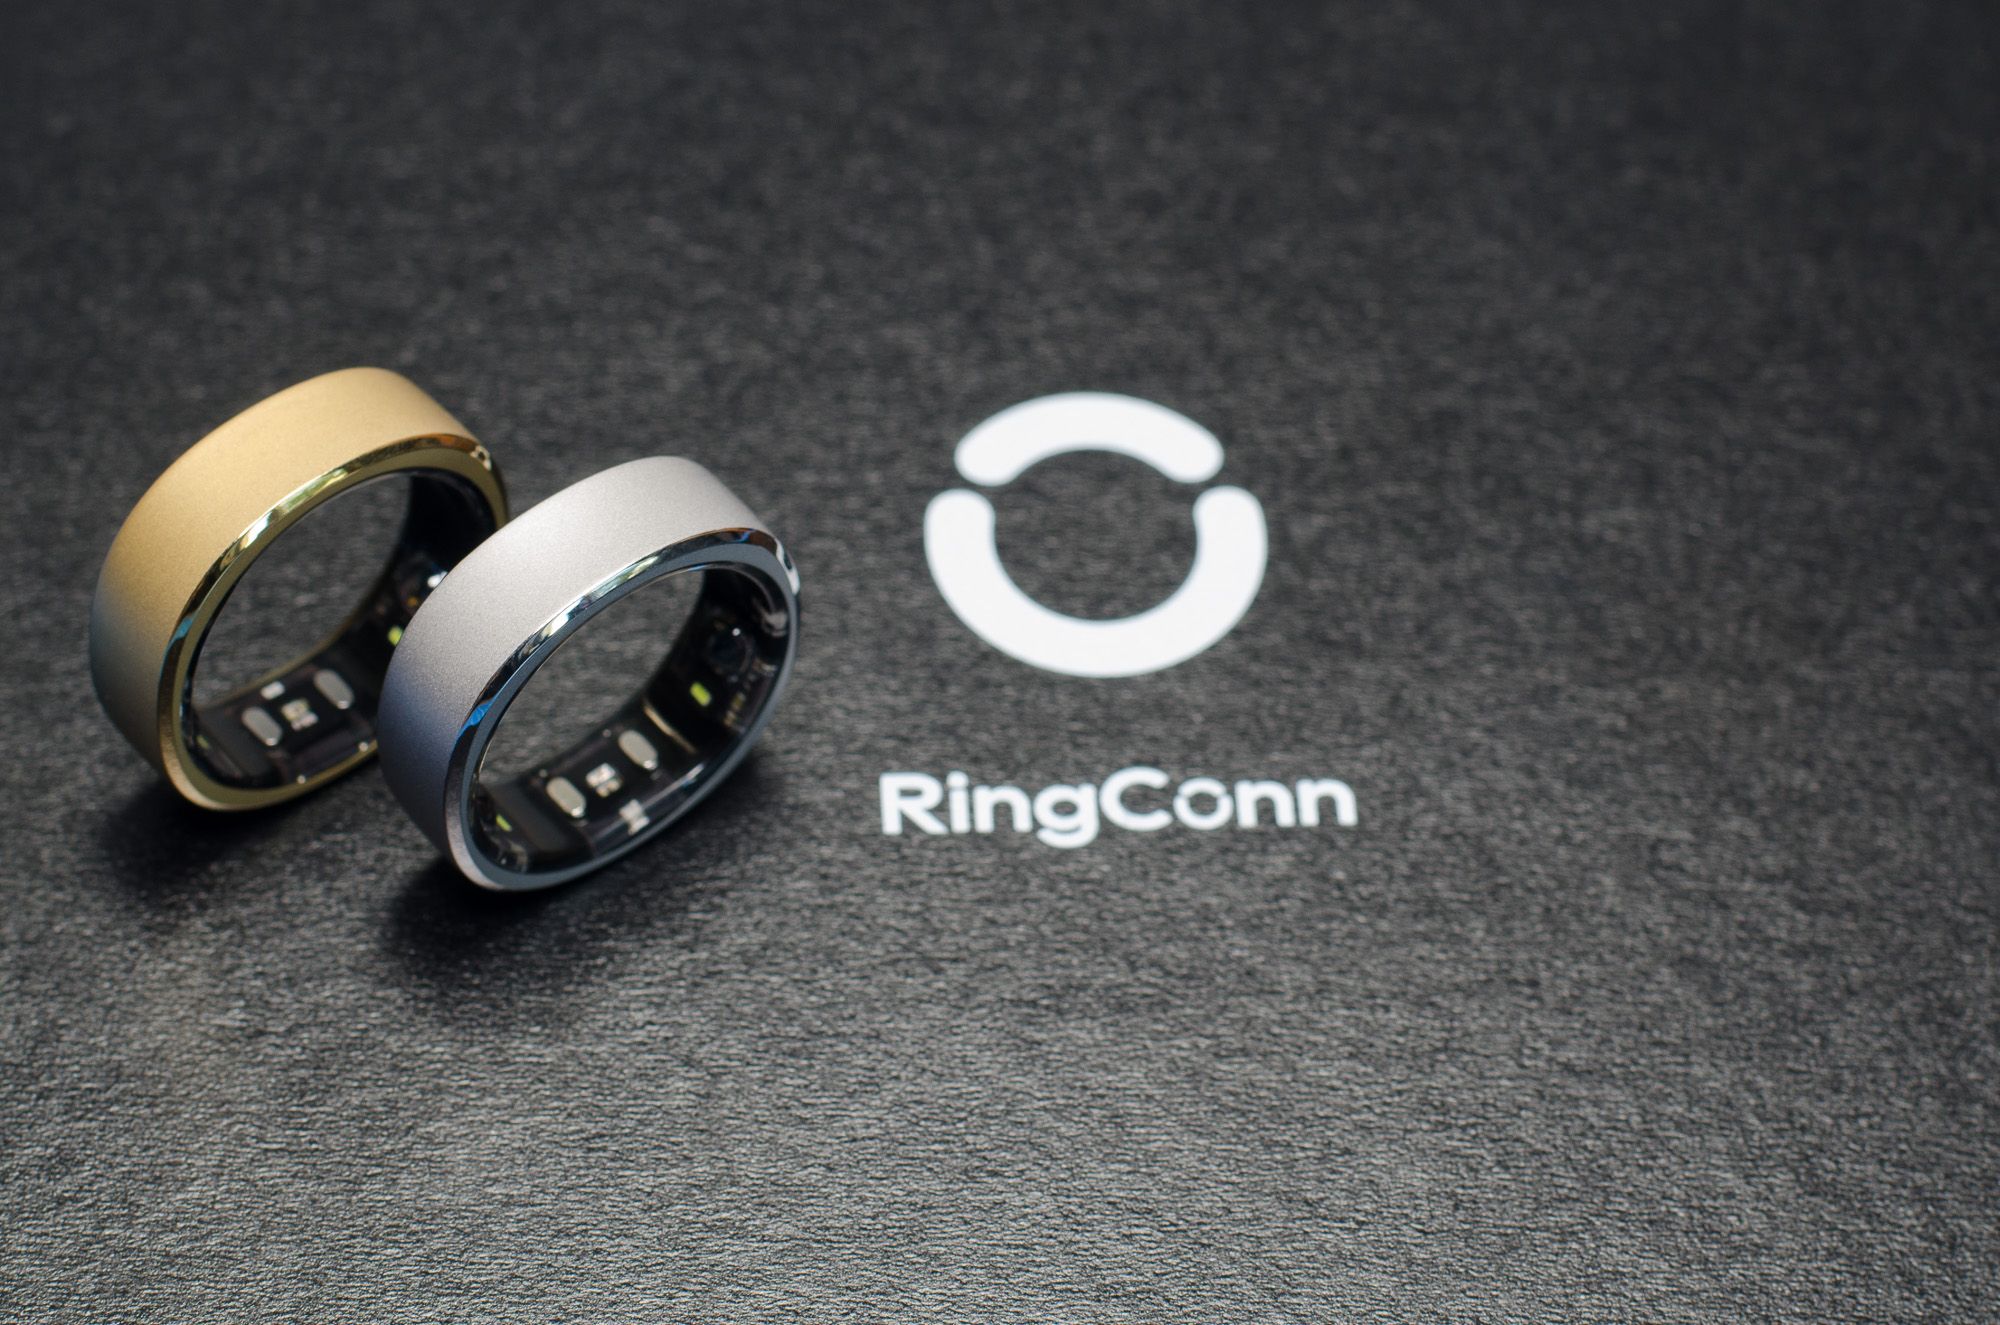 Circular Smart Ring Slim Review